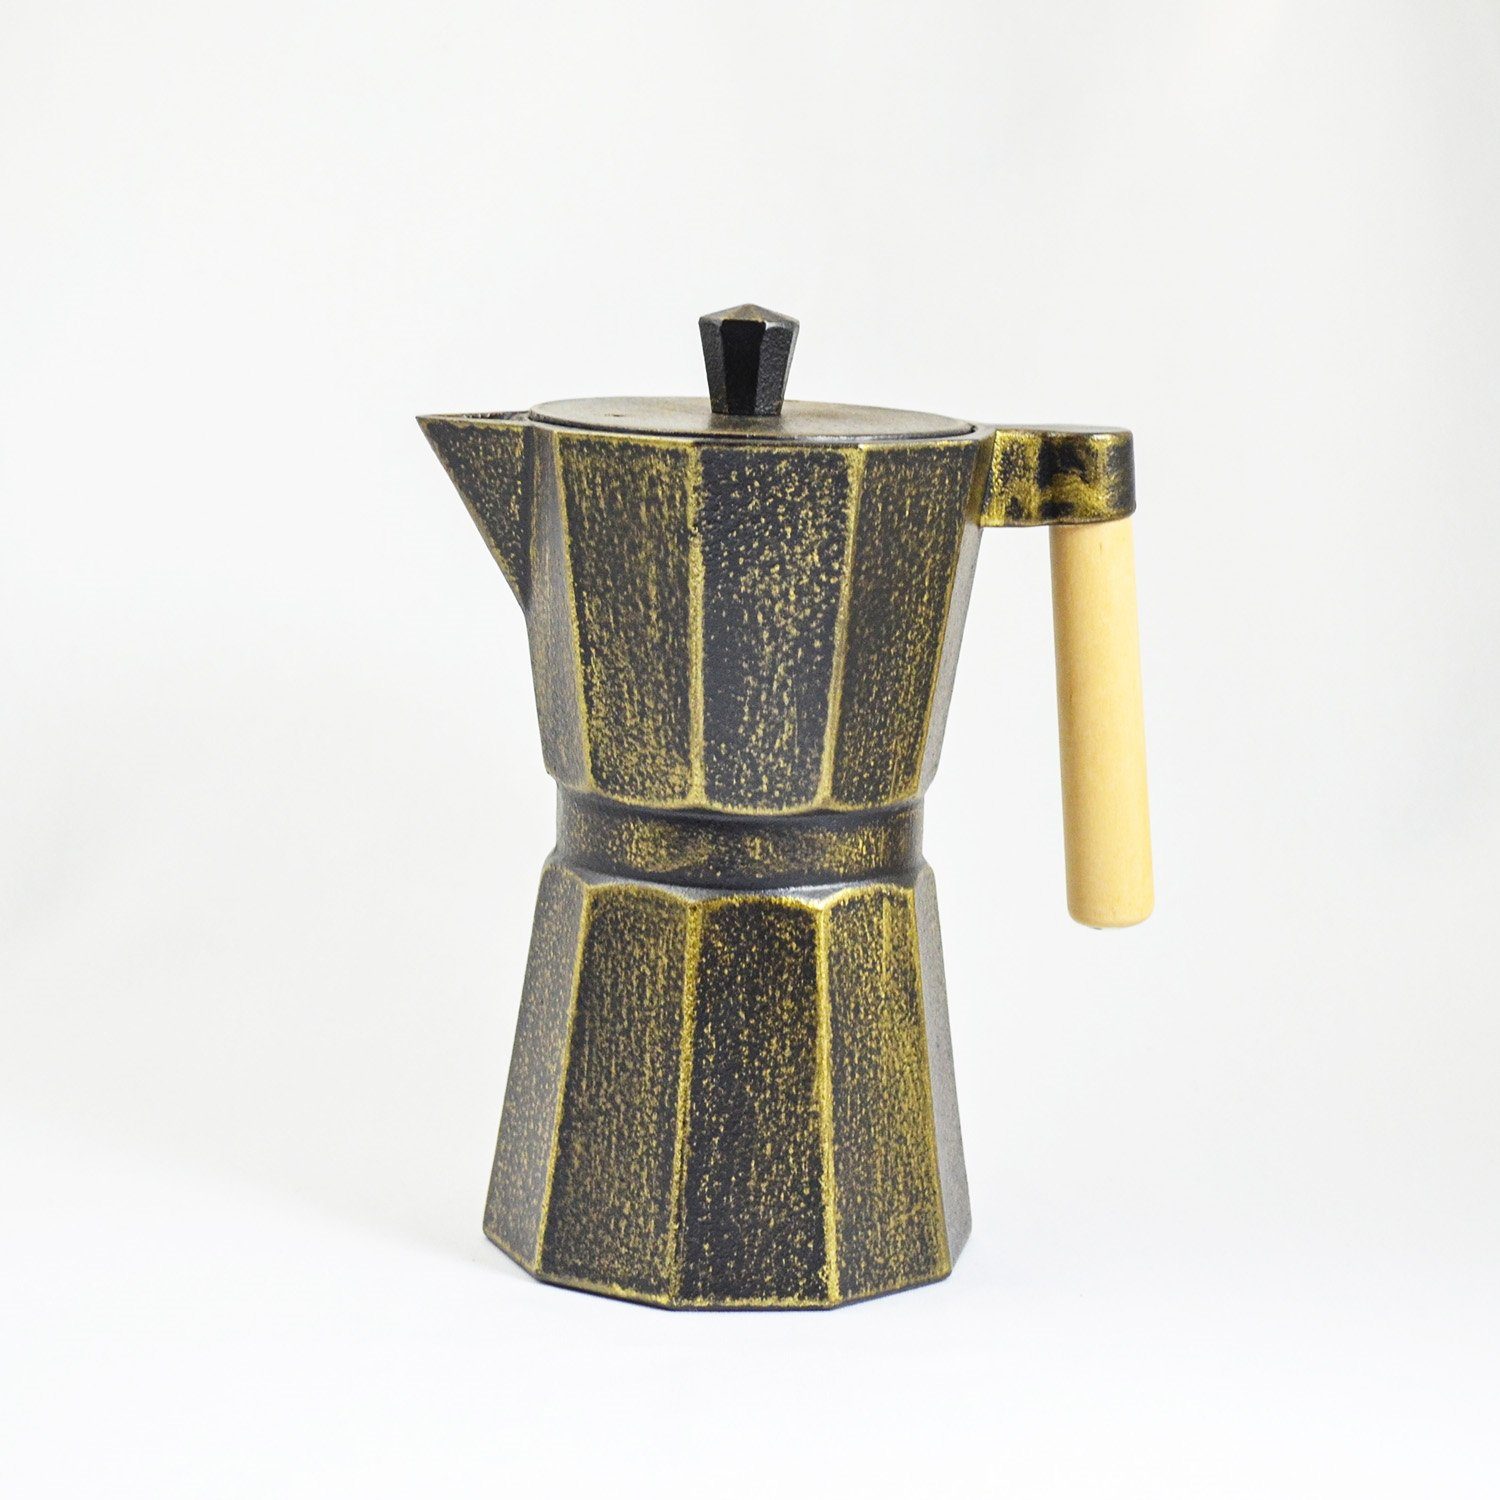 0.8 JA-UNENDLICH Kafei, handgefertigt Gusseisen l, schwarzgold im Teekanne emailliert innen aus Sandgussverfahren,